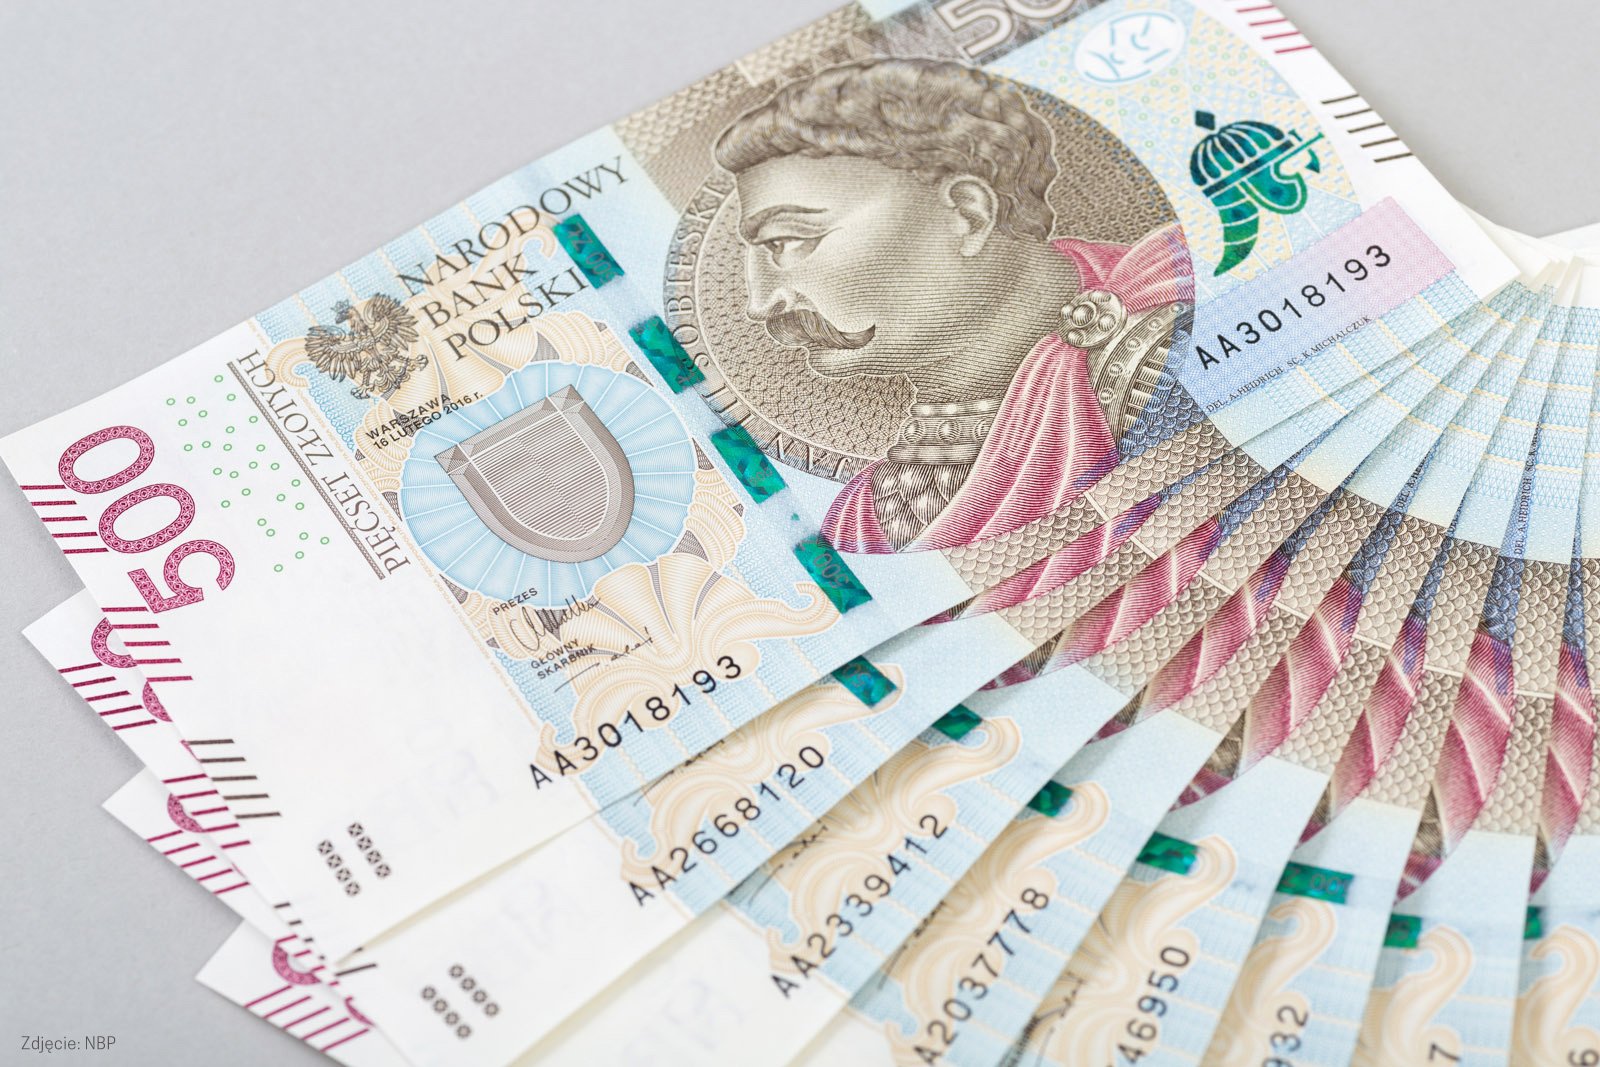 W lutm zobaczymy w portfelach nowy banknot Finanse mediarun 500 zlotych